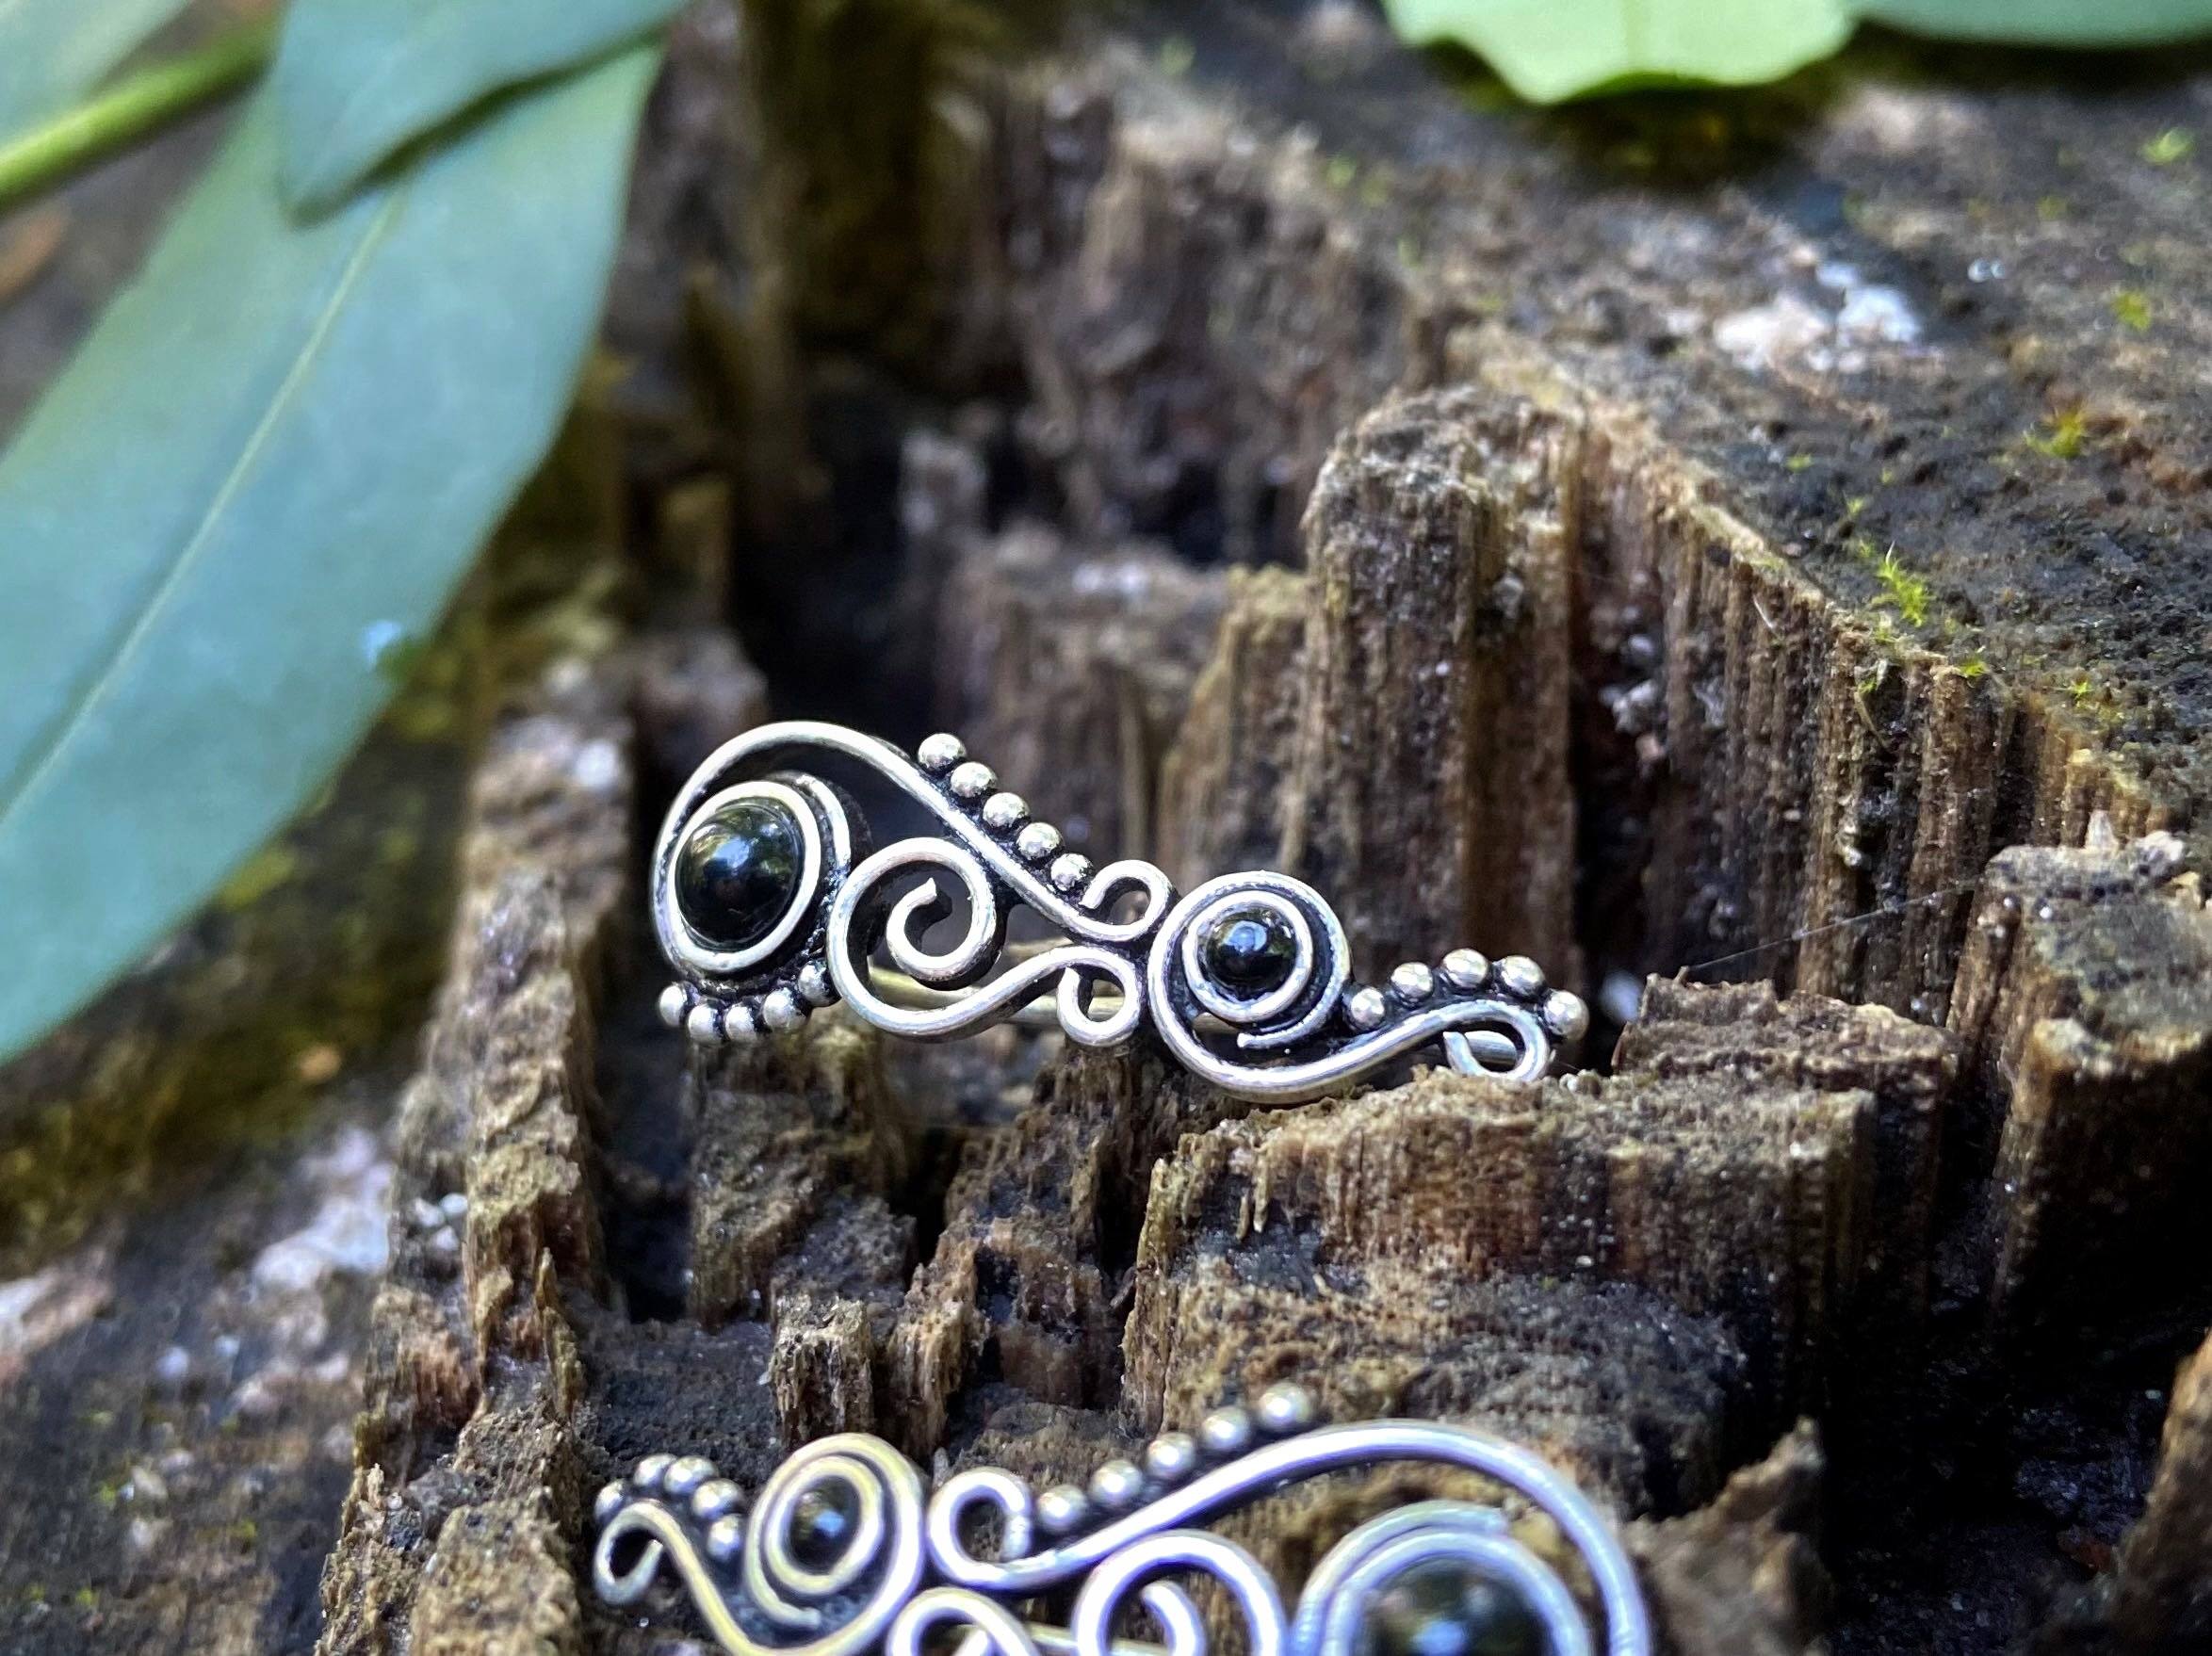 Earclimber Ohrringe mit Onyx Steinen aus Silber